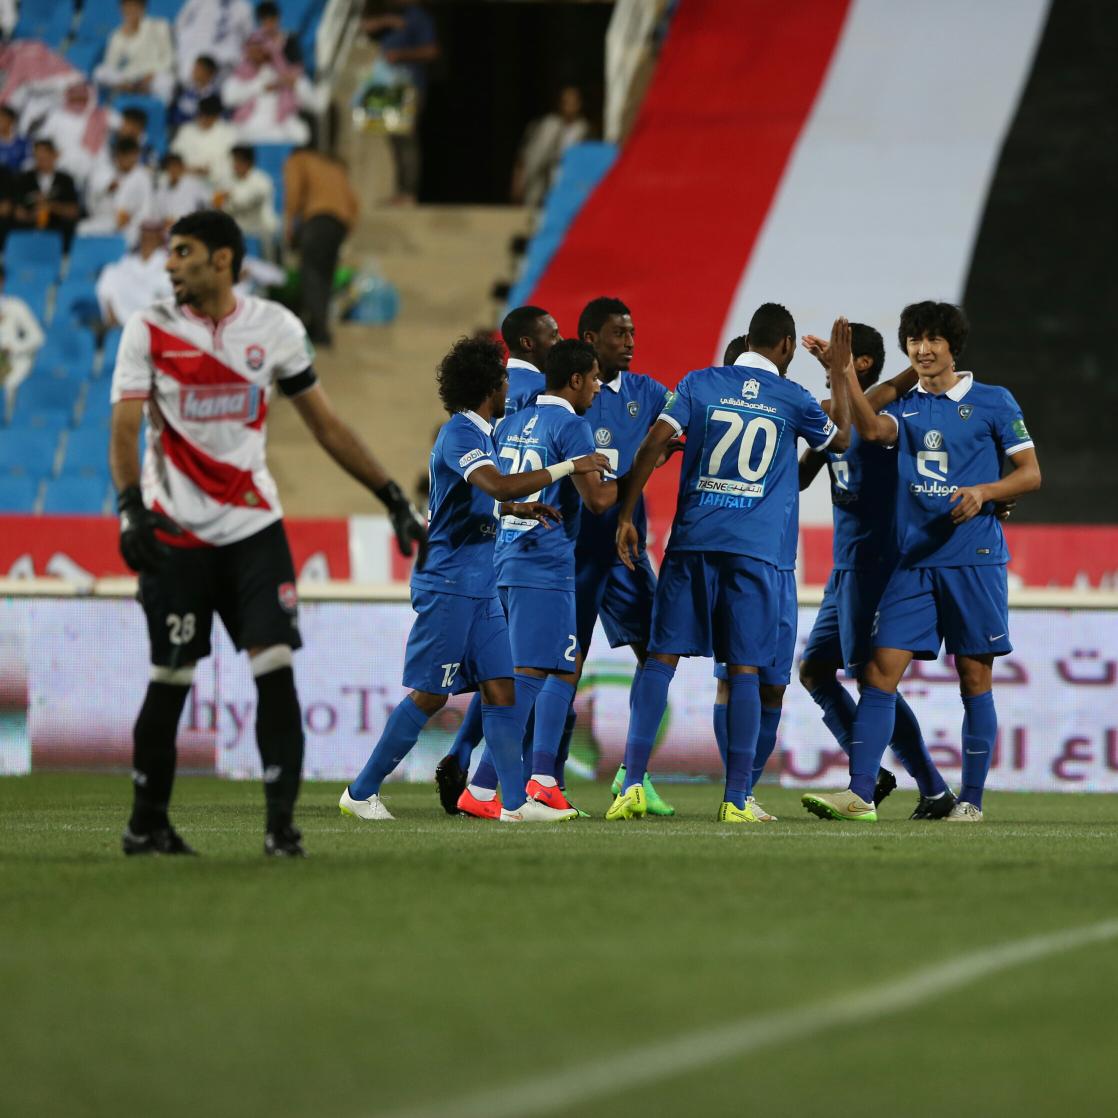 نادي الهلال السعودي on Twitter: "صور من مباراة #الهلال_الرائد #الهلال http://t.co/DBglPGZRI6"